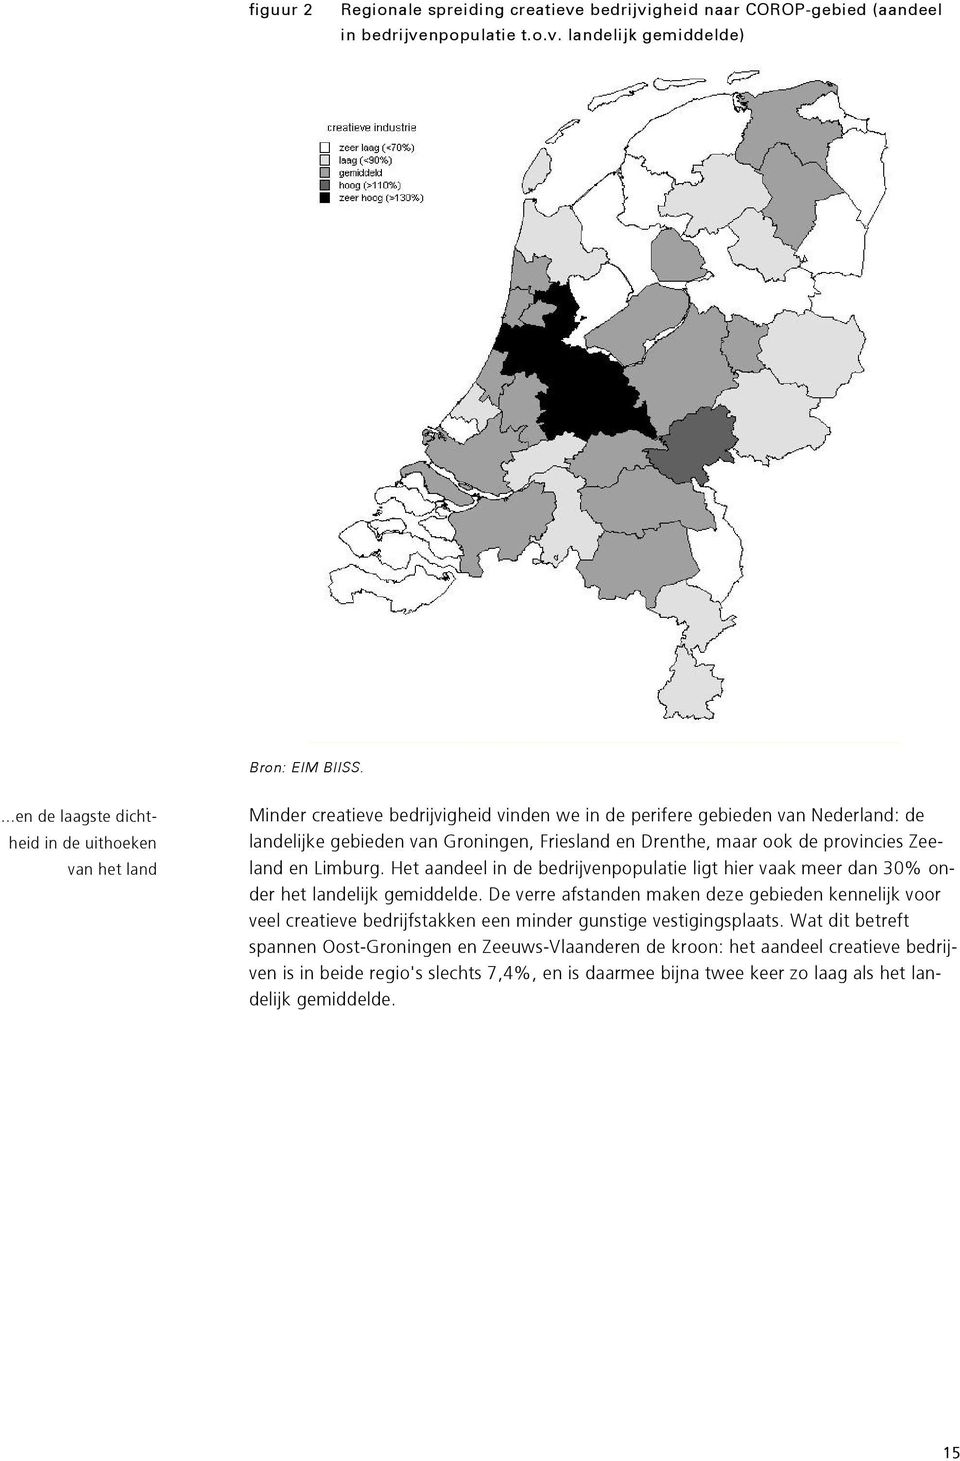 maar ook de provincies Zeeland en Limburg. Het aandeel in de bedrijvenpopulatie ligt hier vaak meer dan 30% onder het landelijk gemiddelde.